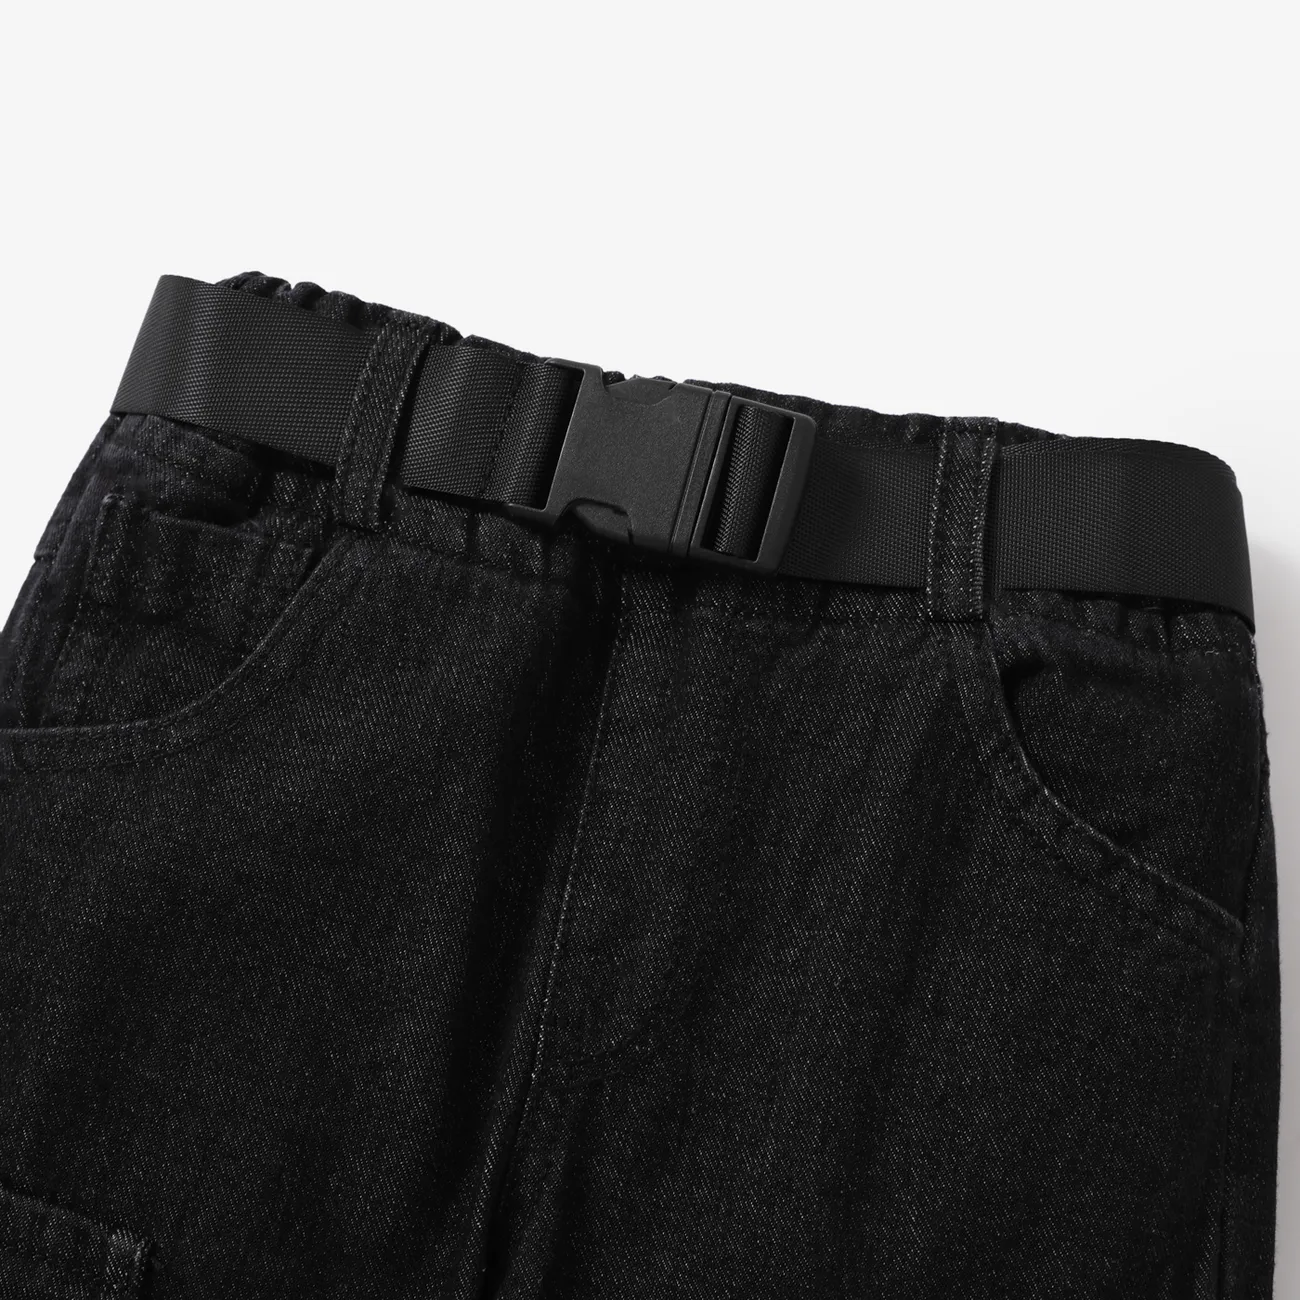 Toddler Boy/Girl Trendy Patch Pocket Denim Jeans(With Belt) Black big image 1